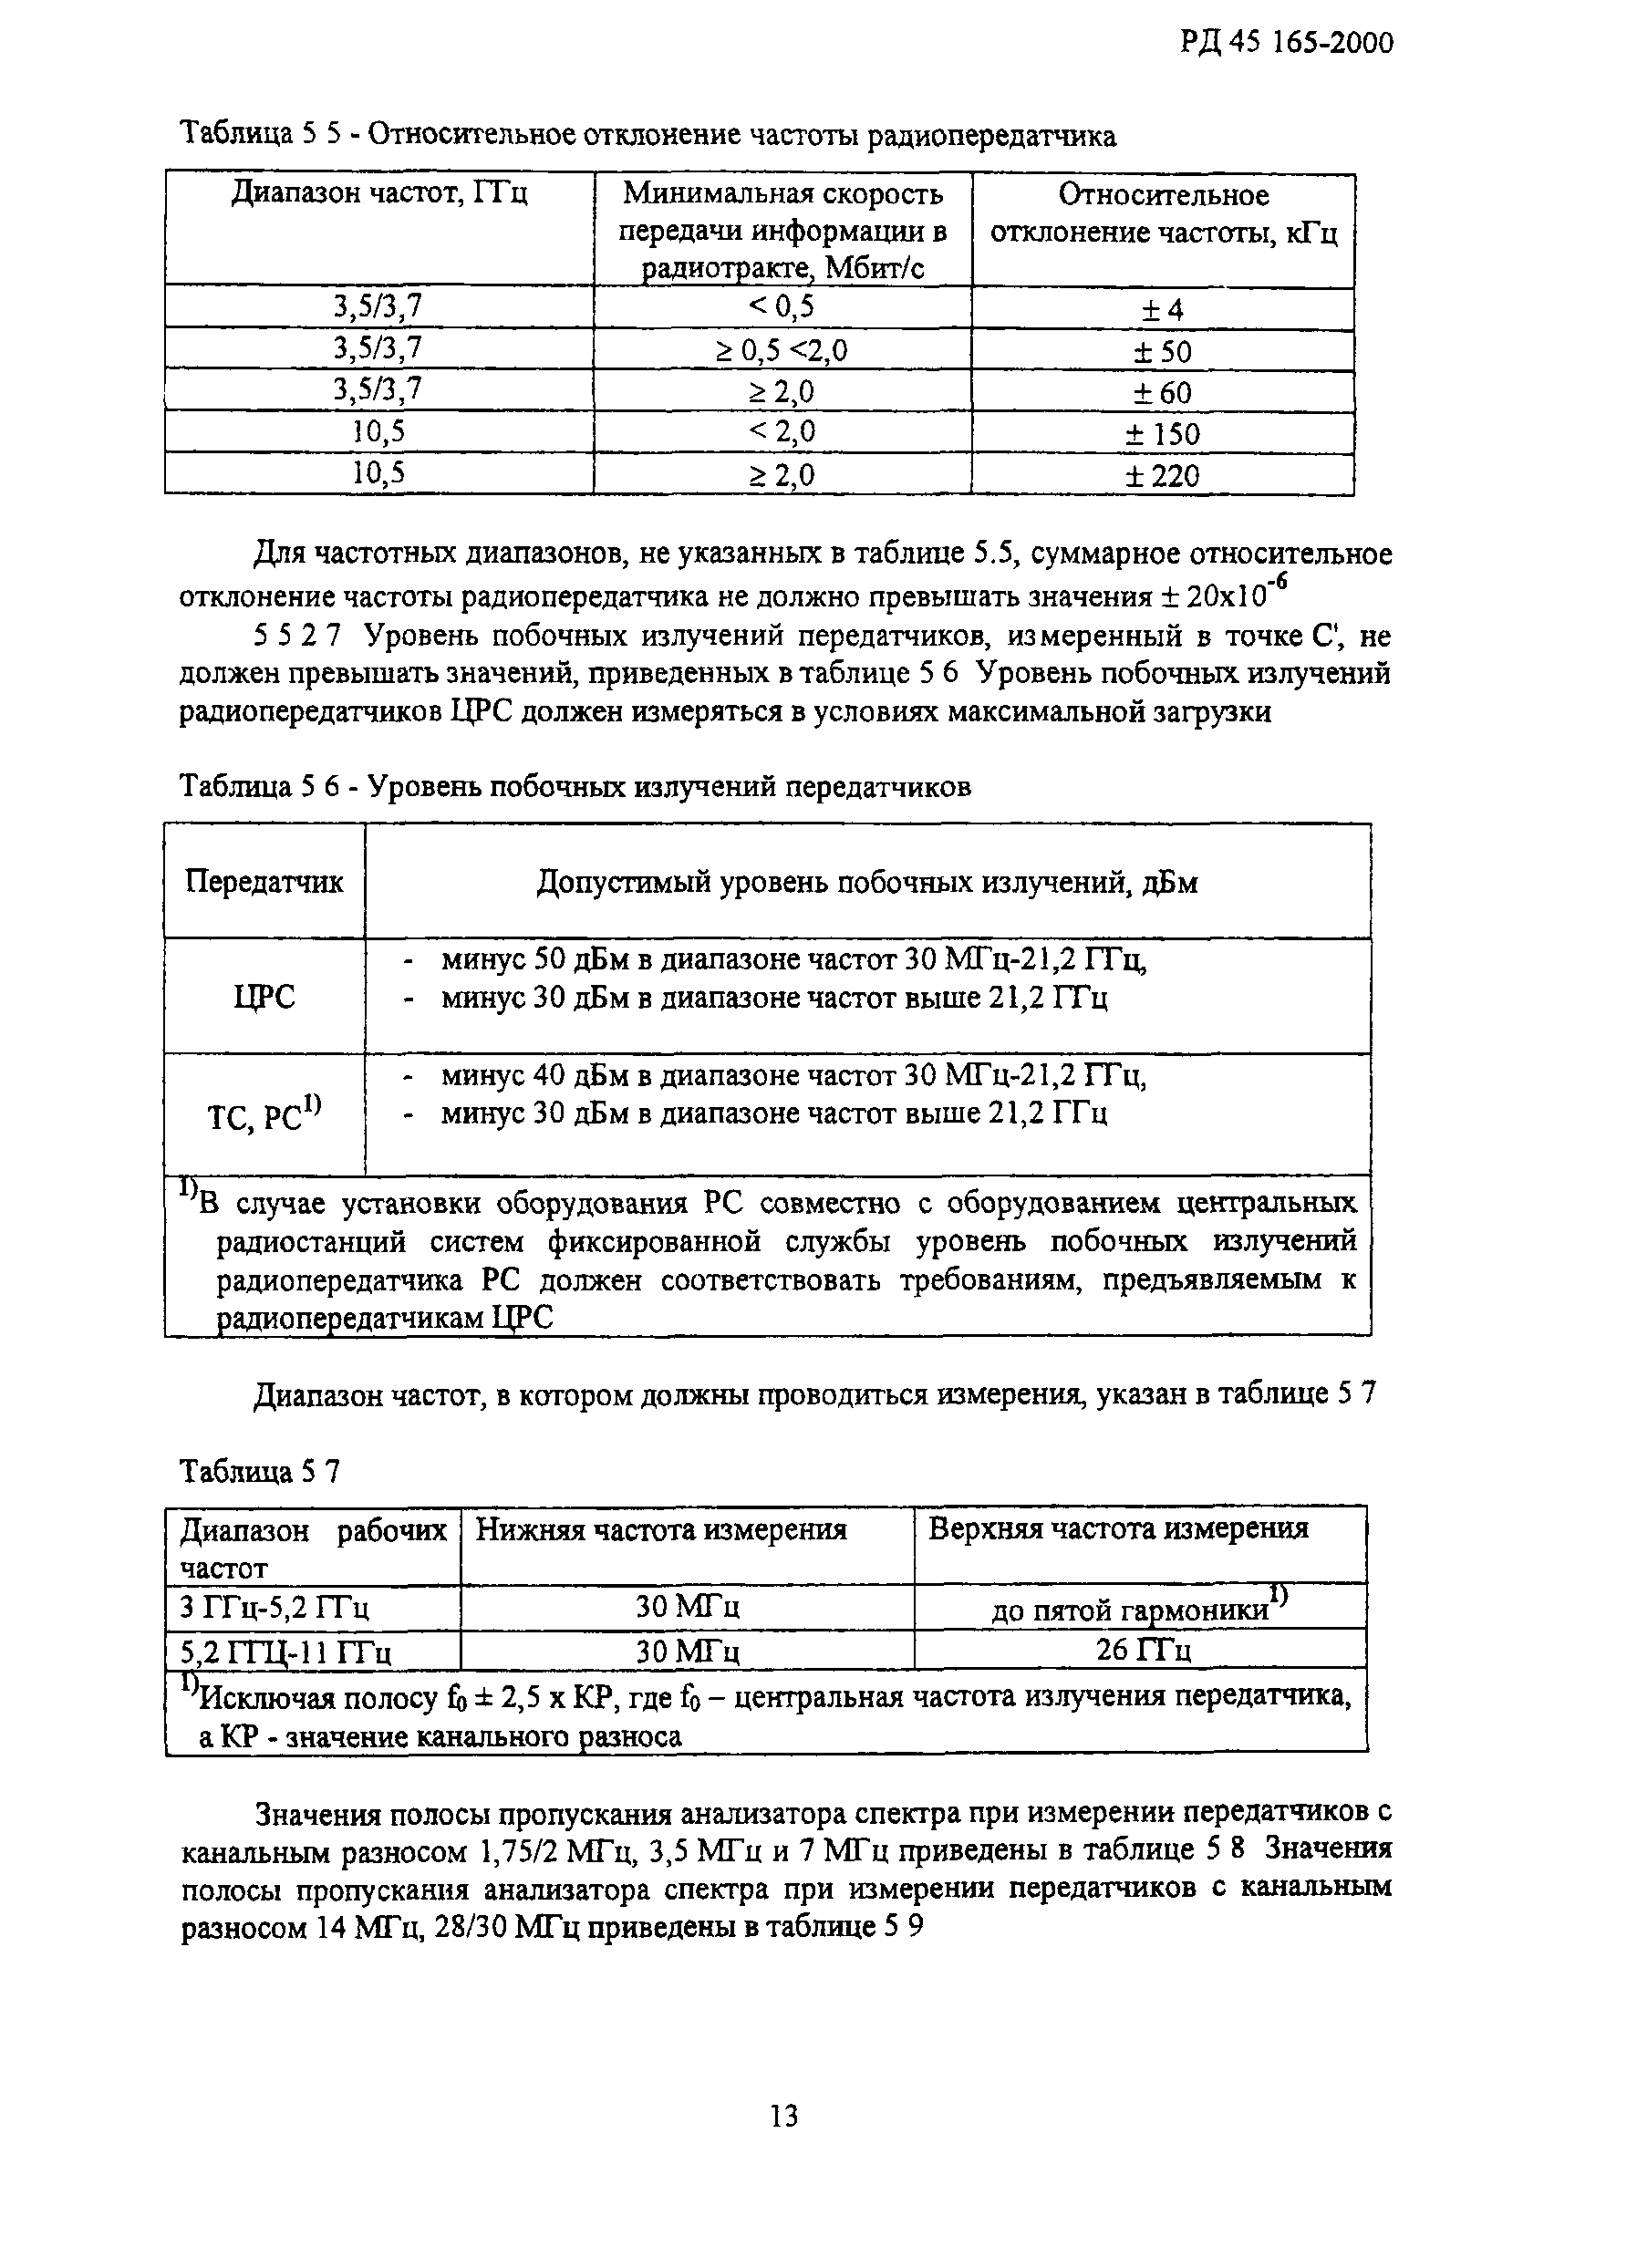 РД 45.165-2000